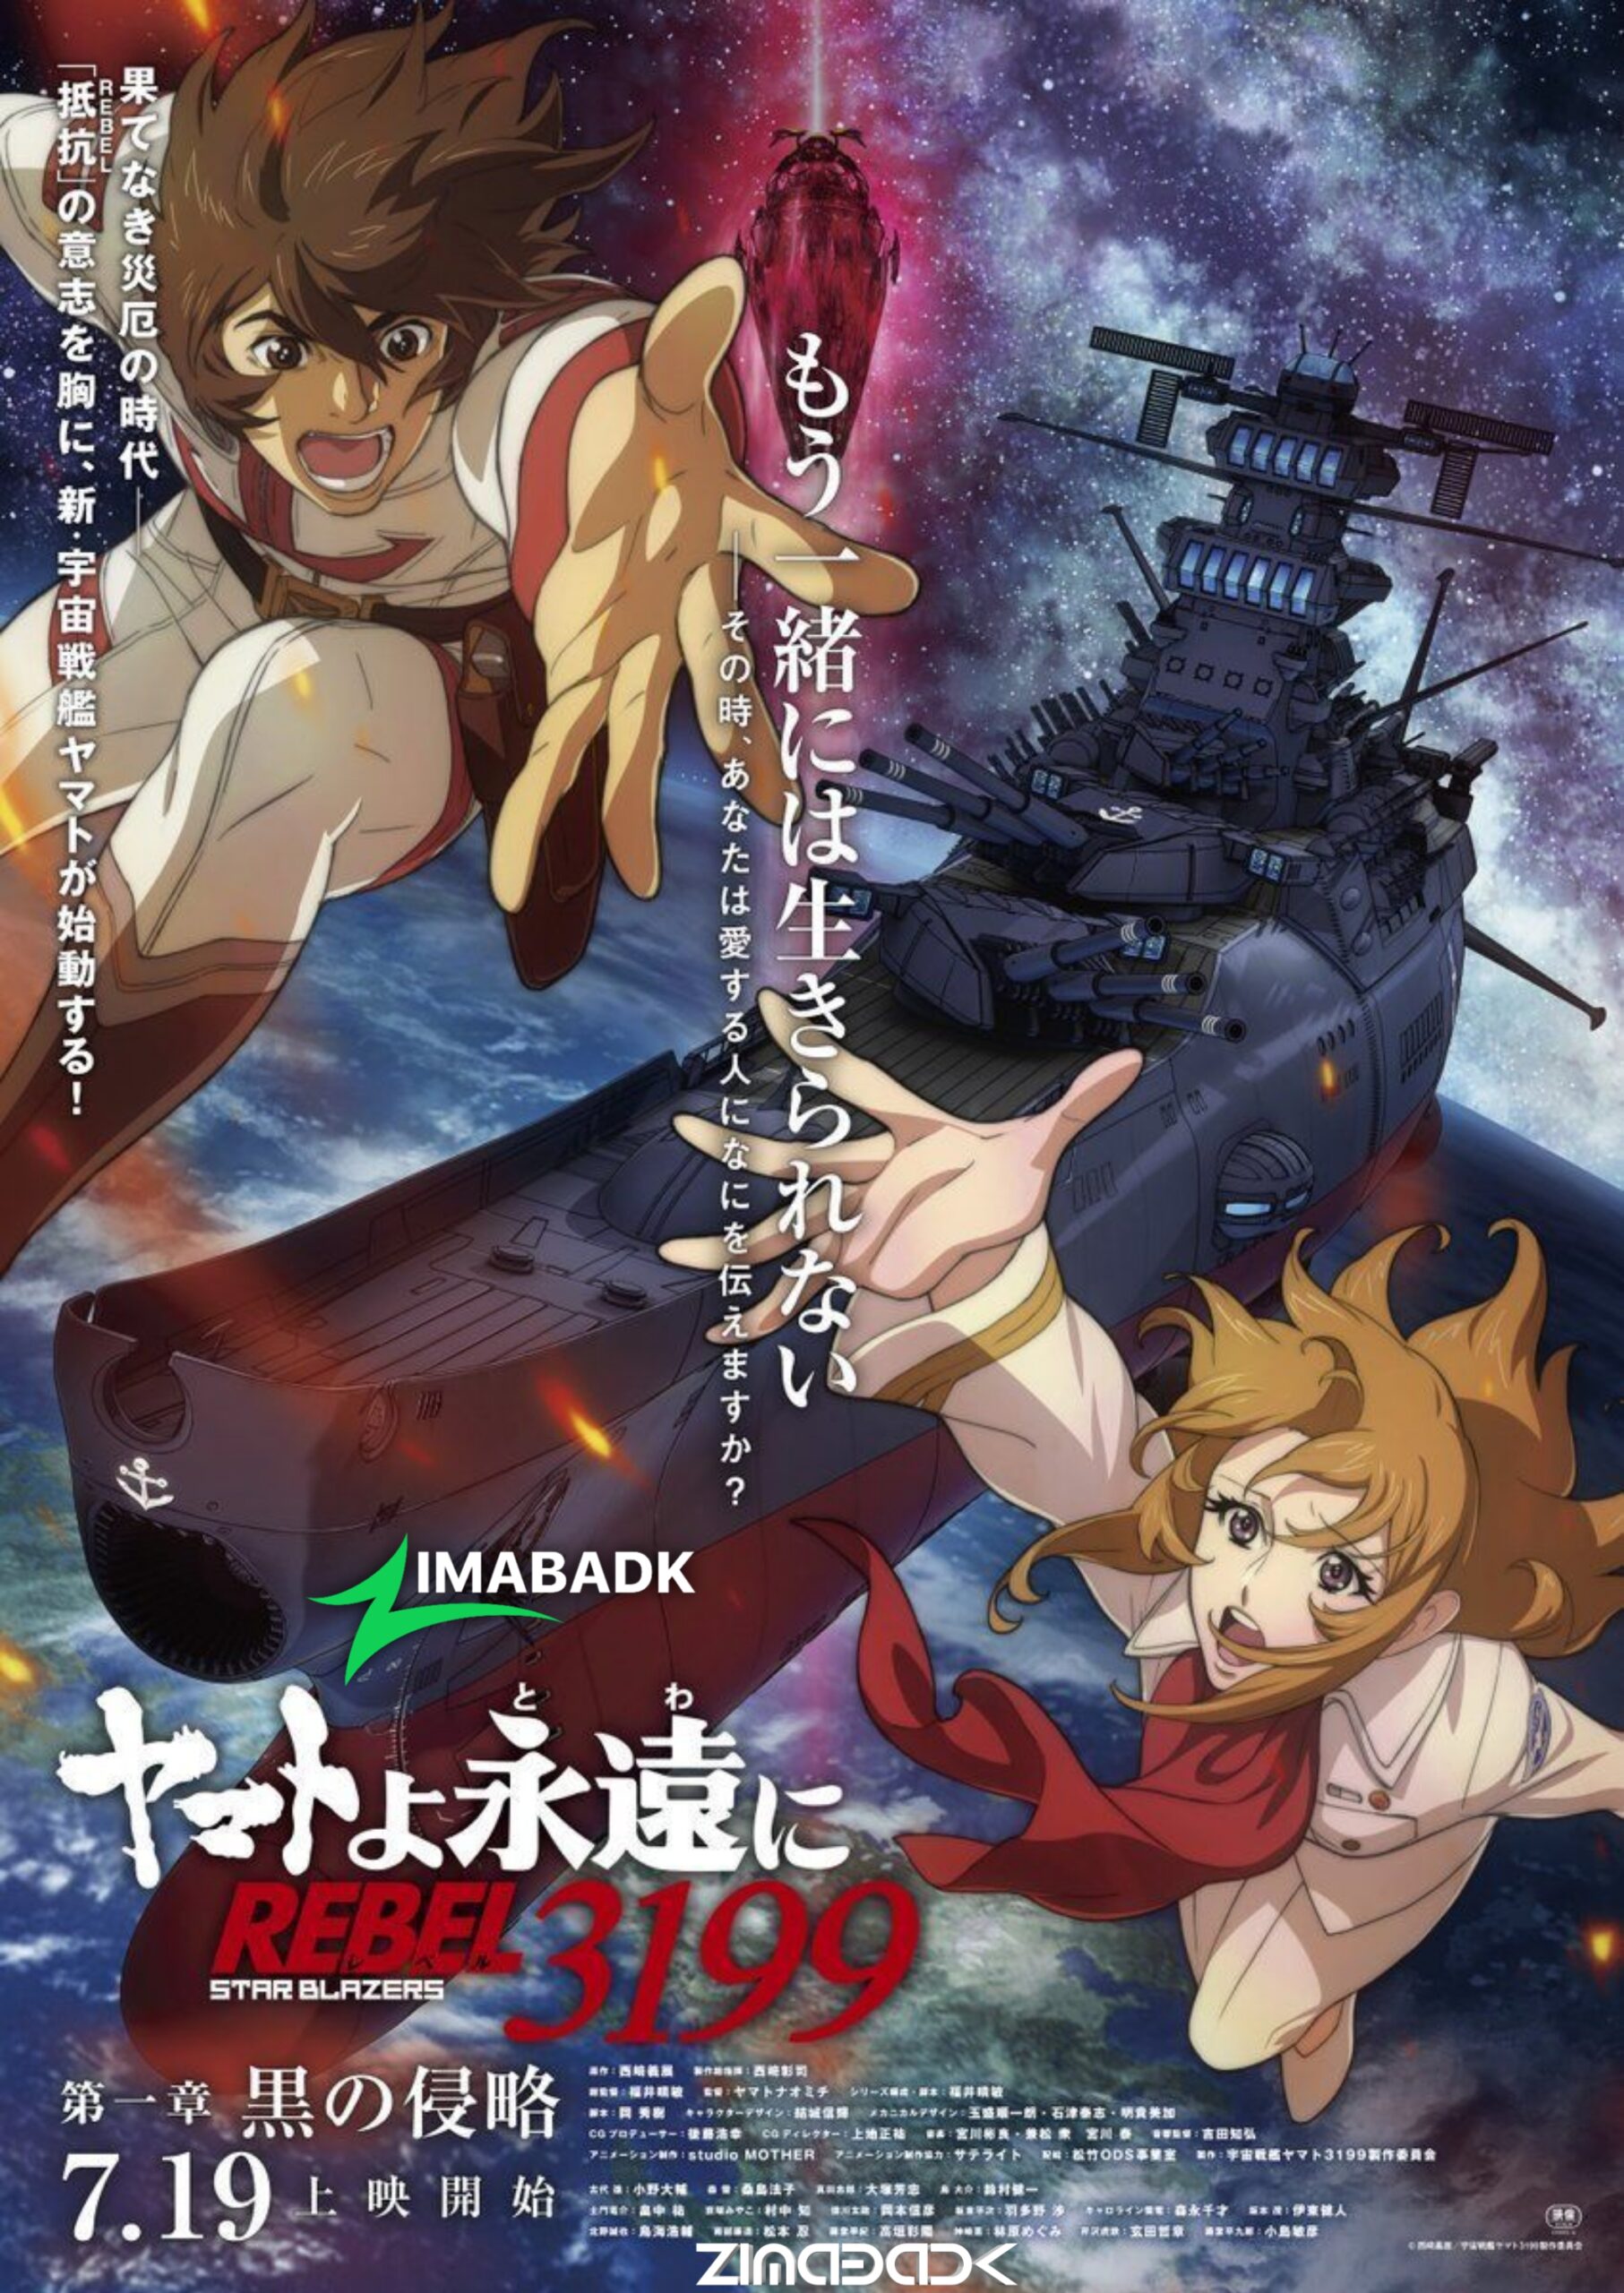 فيلم Yamato yo, Towa ni: Rebel 3199 مترجم